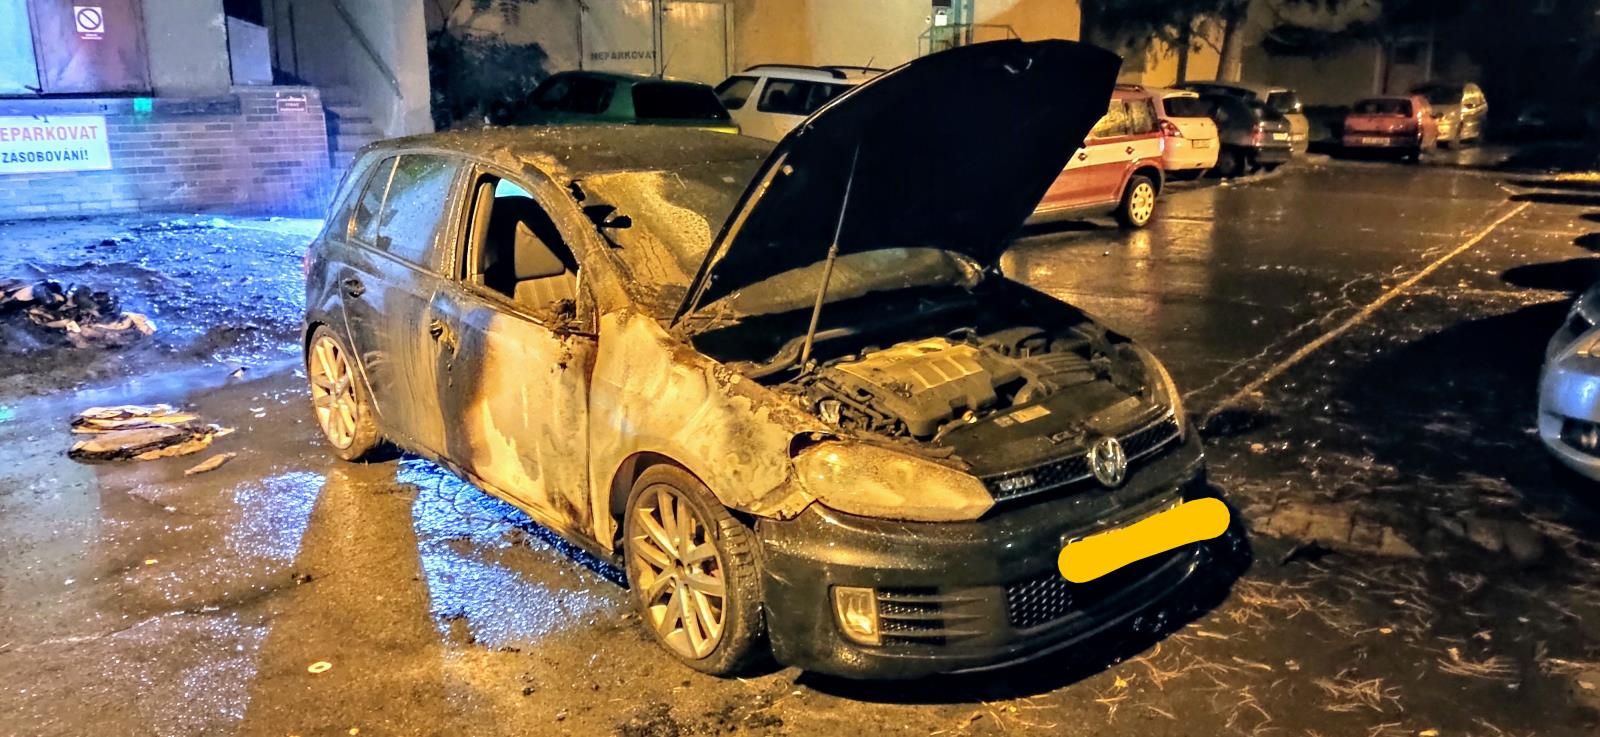 Požár popelnic a zaparkovaných aut v Děčíně